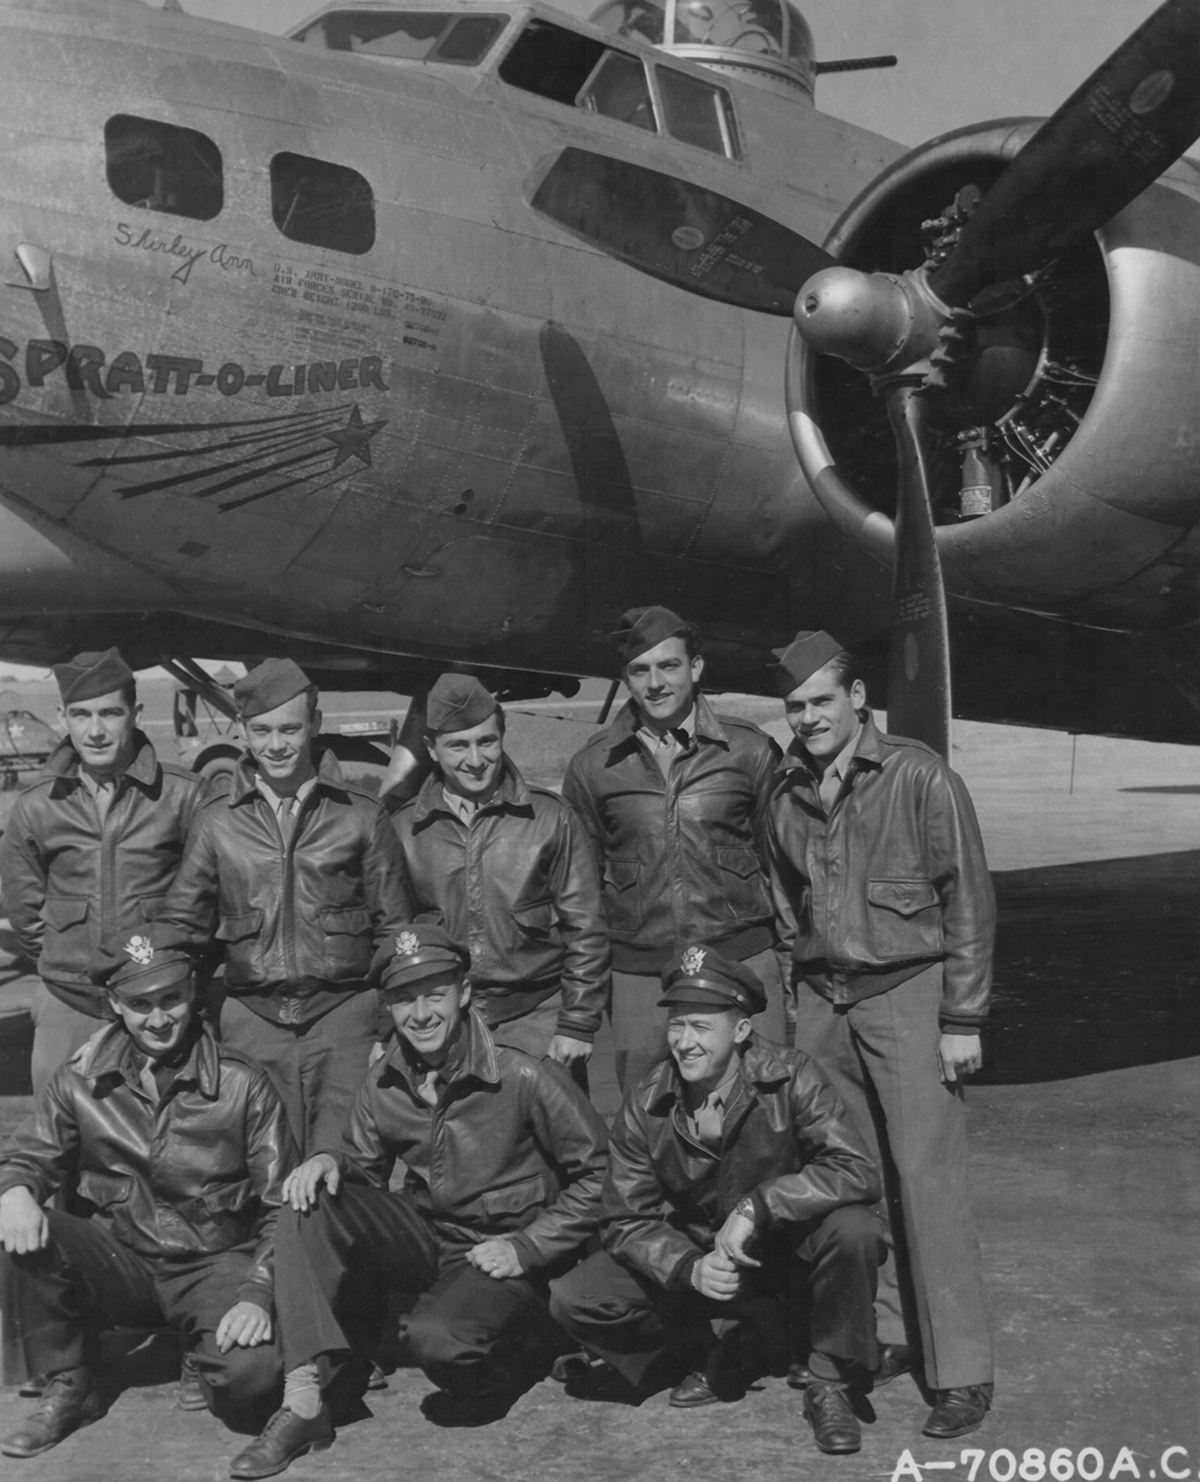 B-17 #43-37932 / Spratt-O-Liner